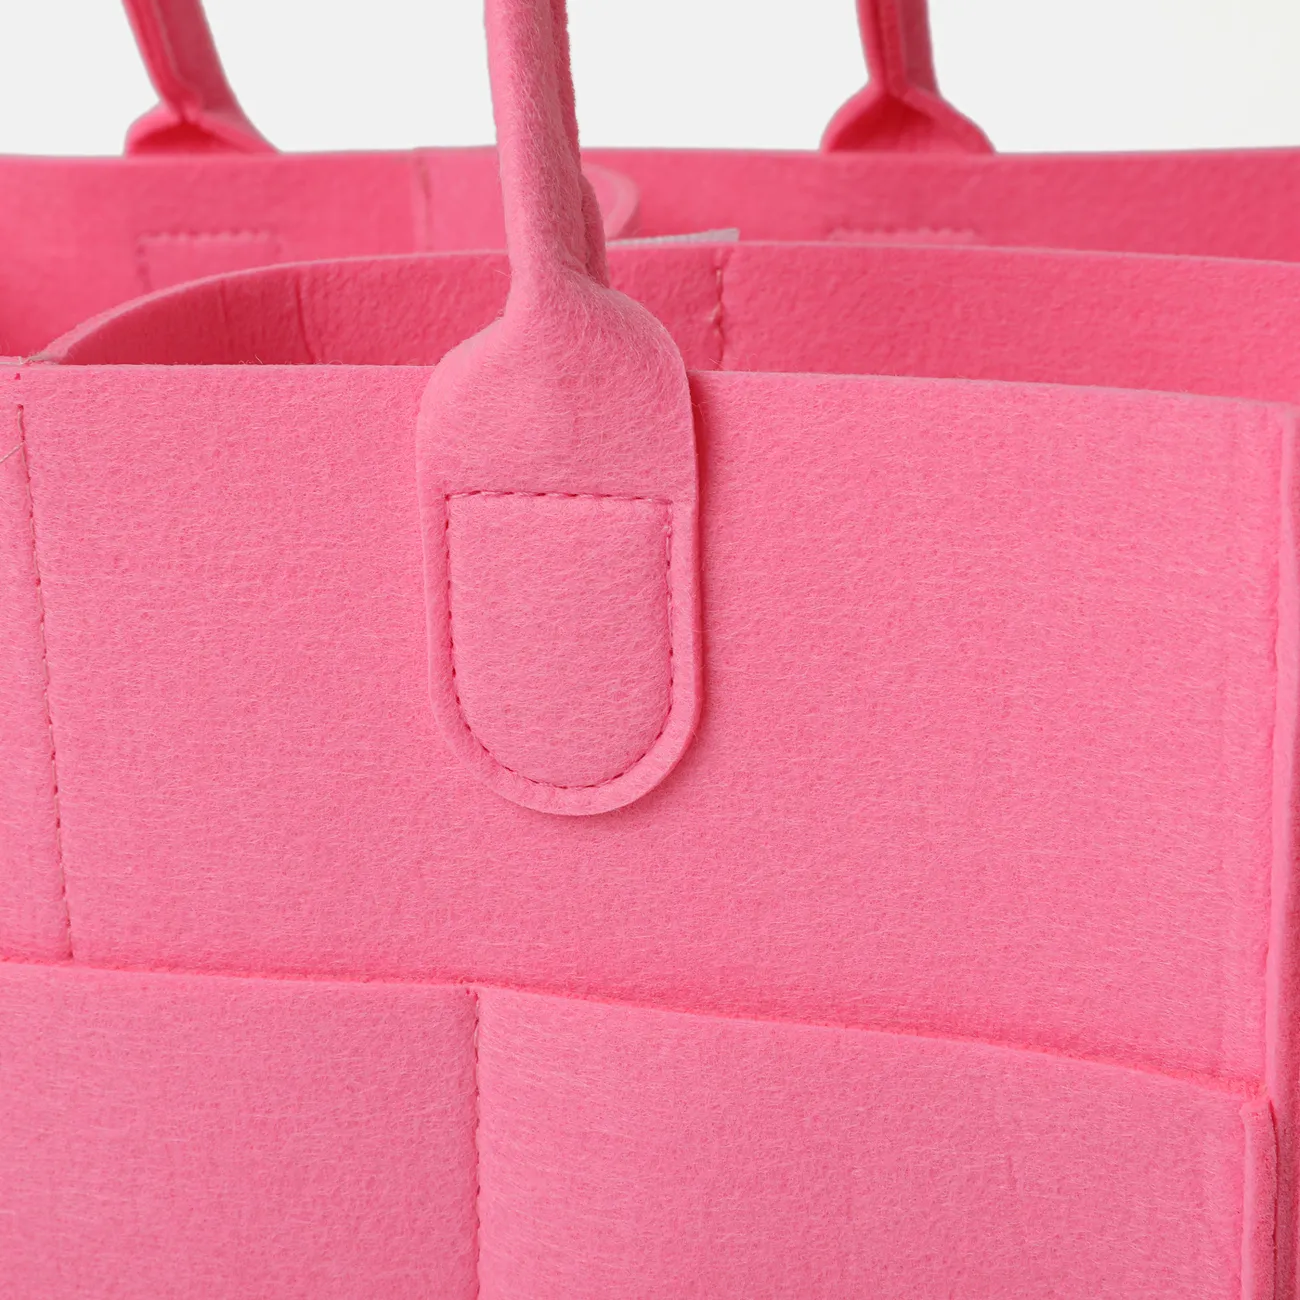 Bolsa de pañales plegable de gran capacidad de almacenamiento de tela para bebé, carrito de pañales de gran tamaño Rosado big image 1